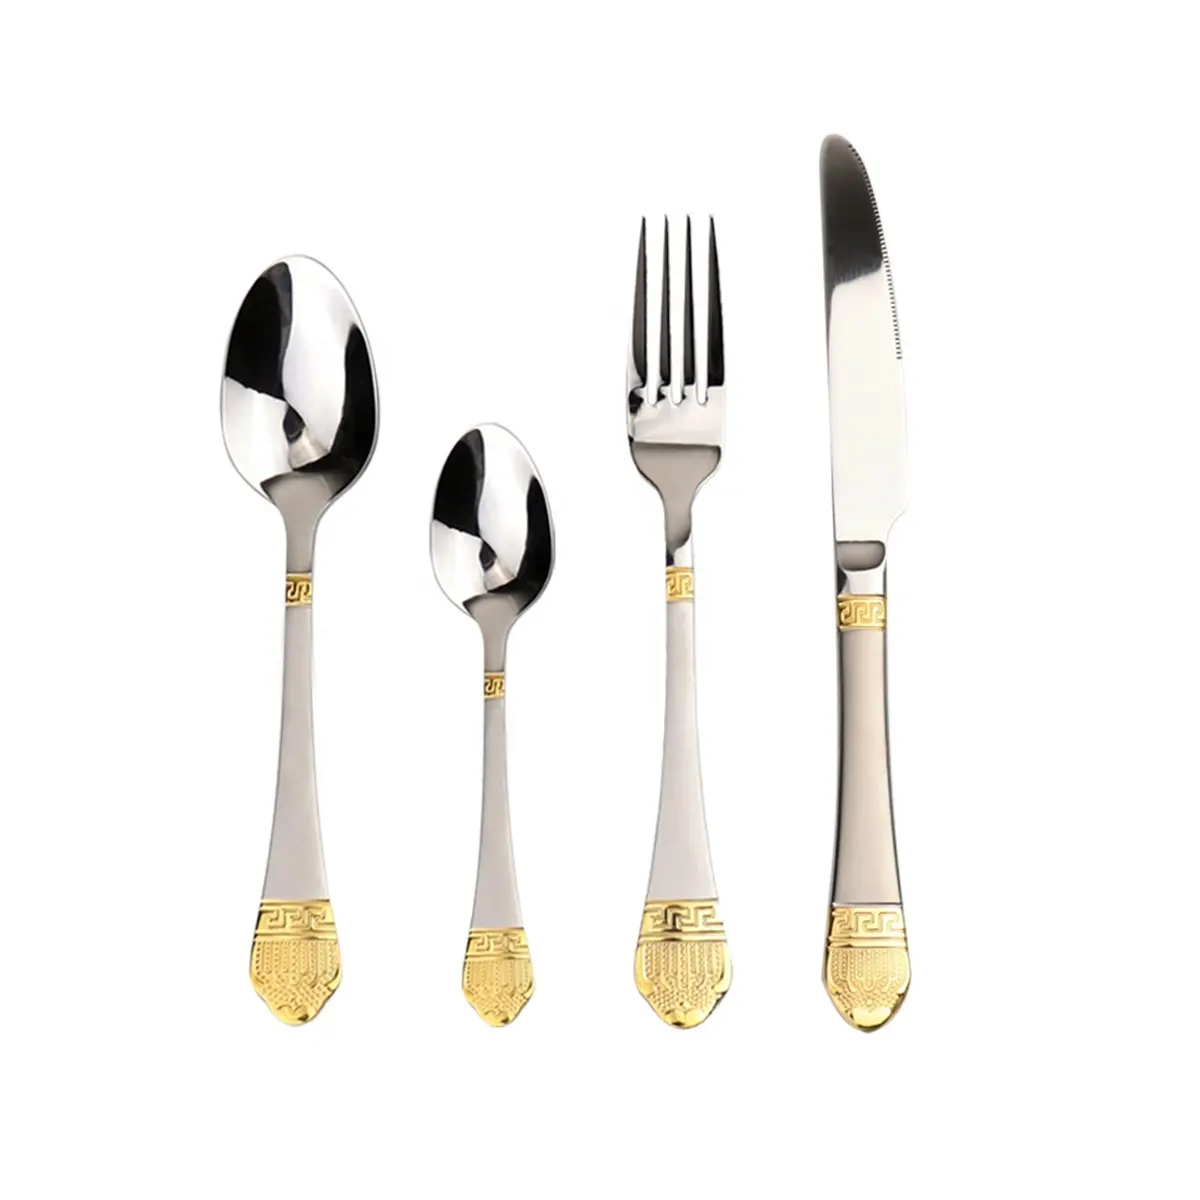 カトラリーセットスプーンナイフとフォークステンレス鋼ソリッドメタルエレガントなデザインのハンドルシルバーとゴールドの食器メッキカトラリー